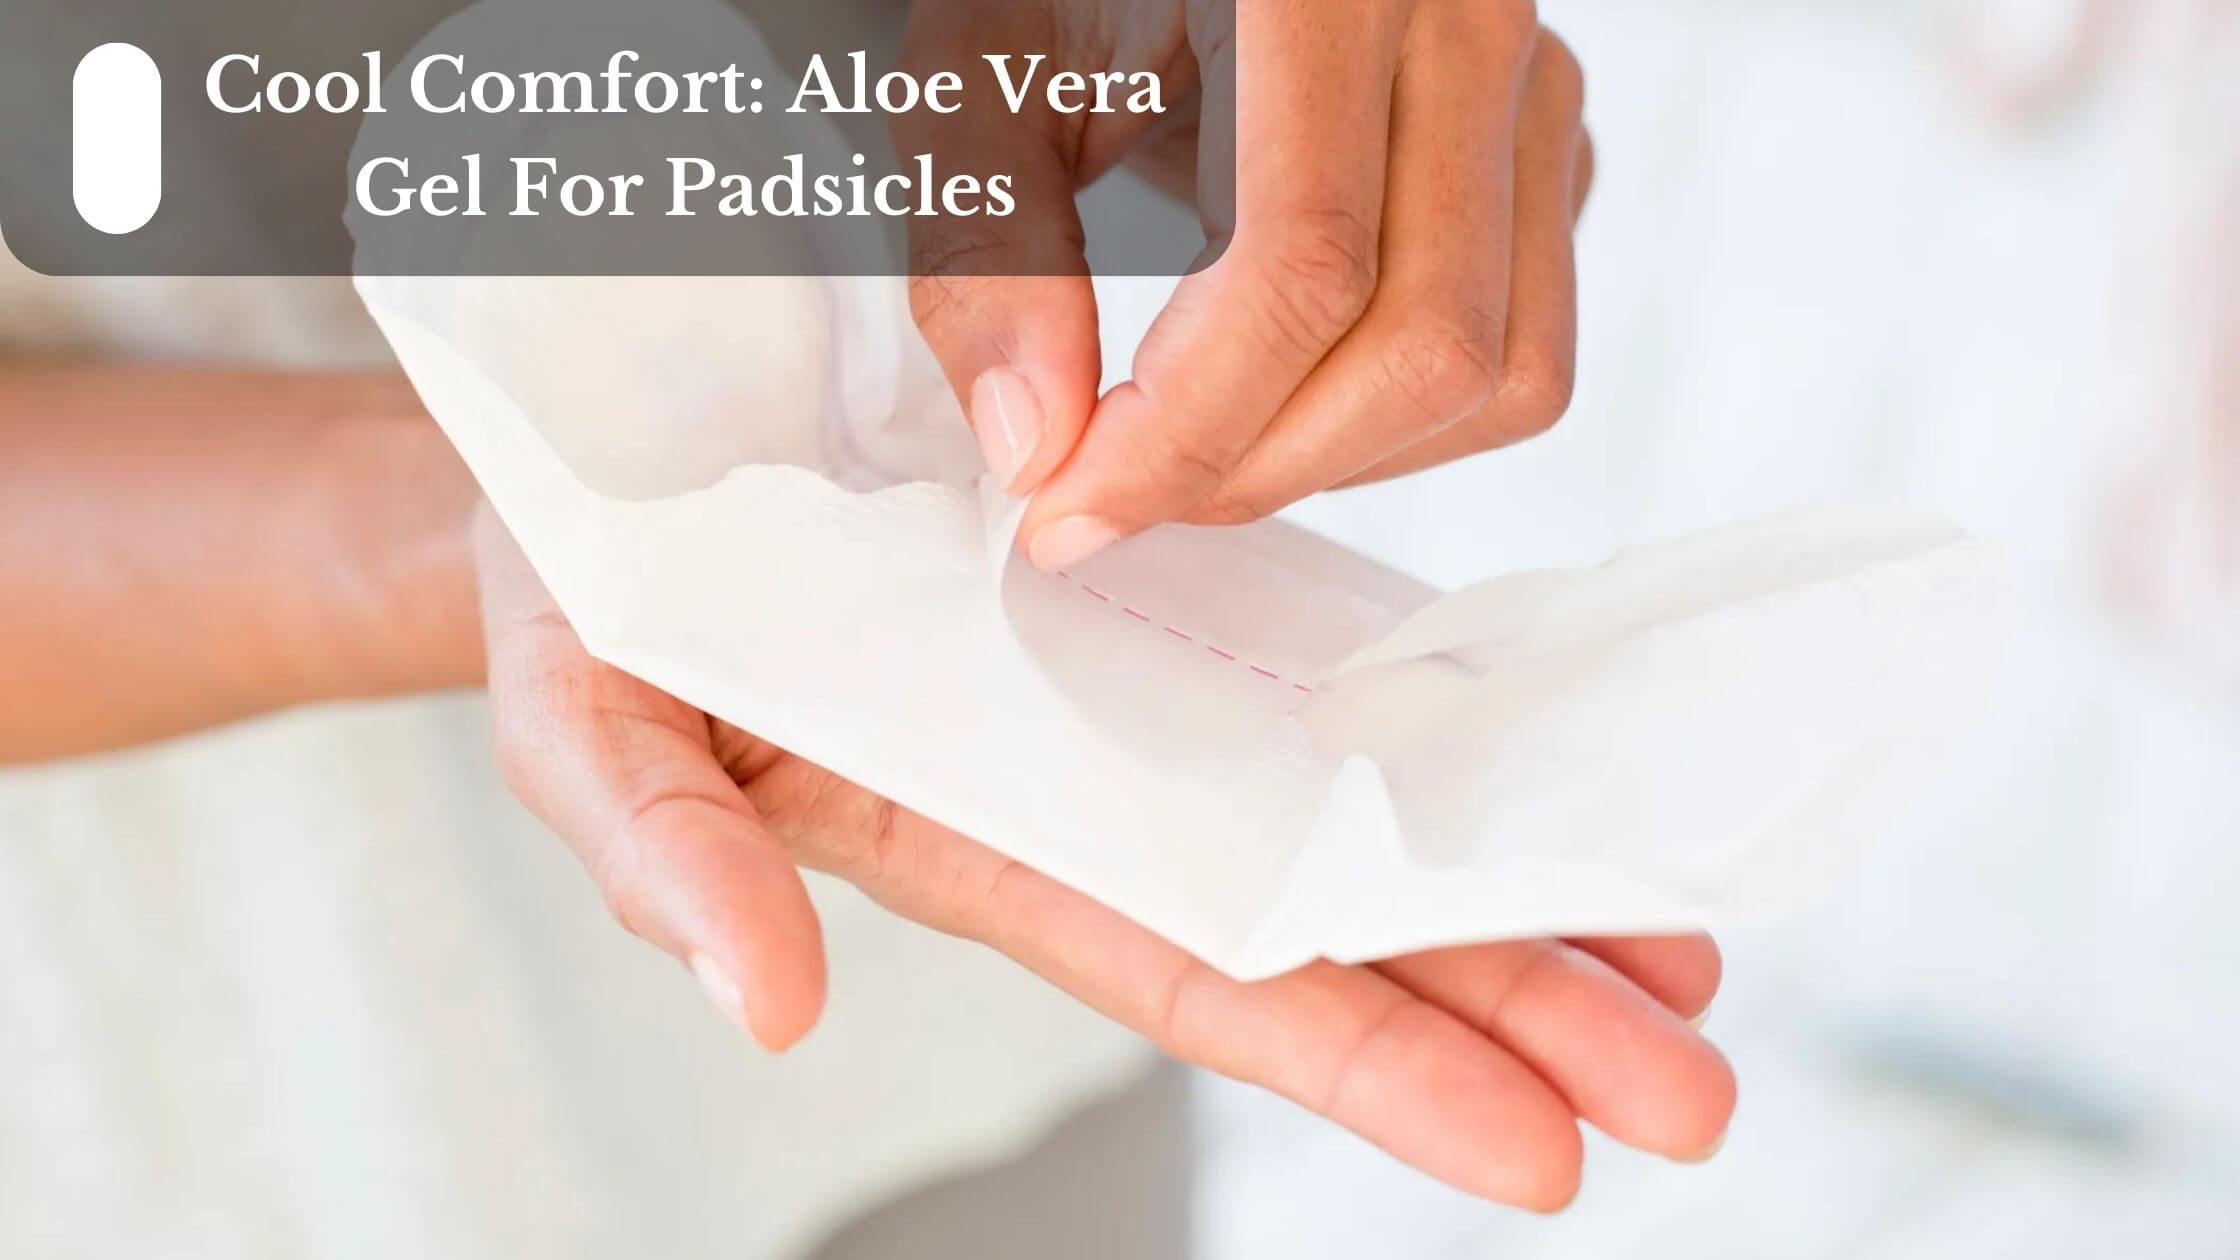 Cool Comfort: Aloe Vera Gel For Padsicles